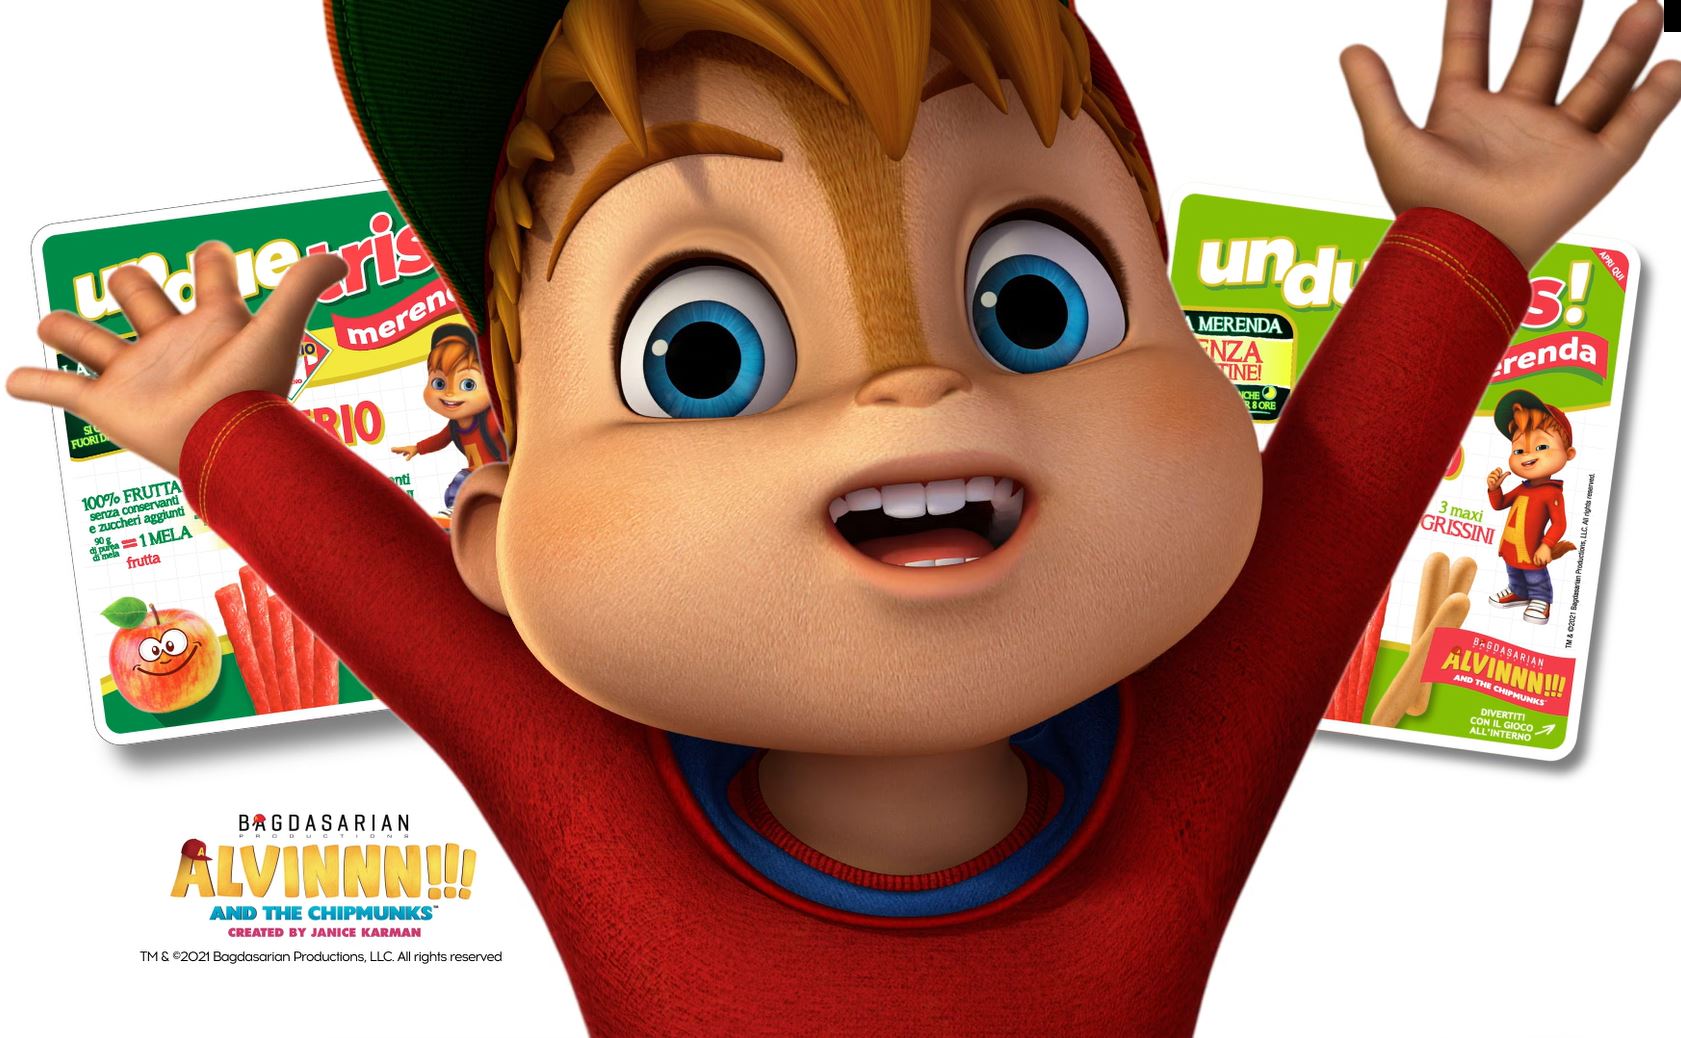 Citterio presenta la nuova coinvolgente campagna multi canale su TV, digital e stampa per Unduetris Merenda, lo spuntino per bambini con protagonista ALVINNN!!! And the Chipmunks